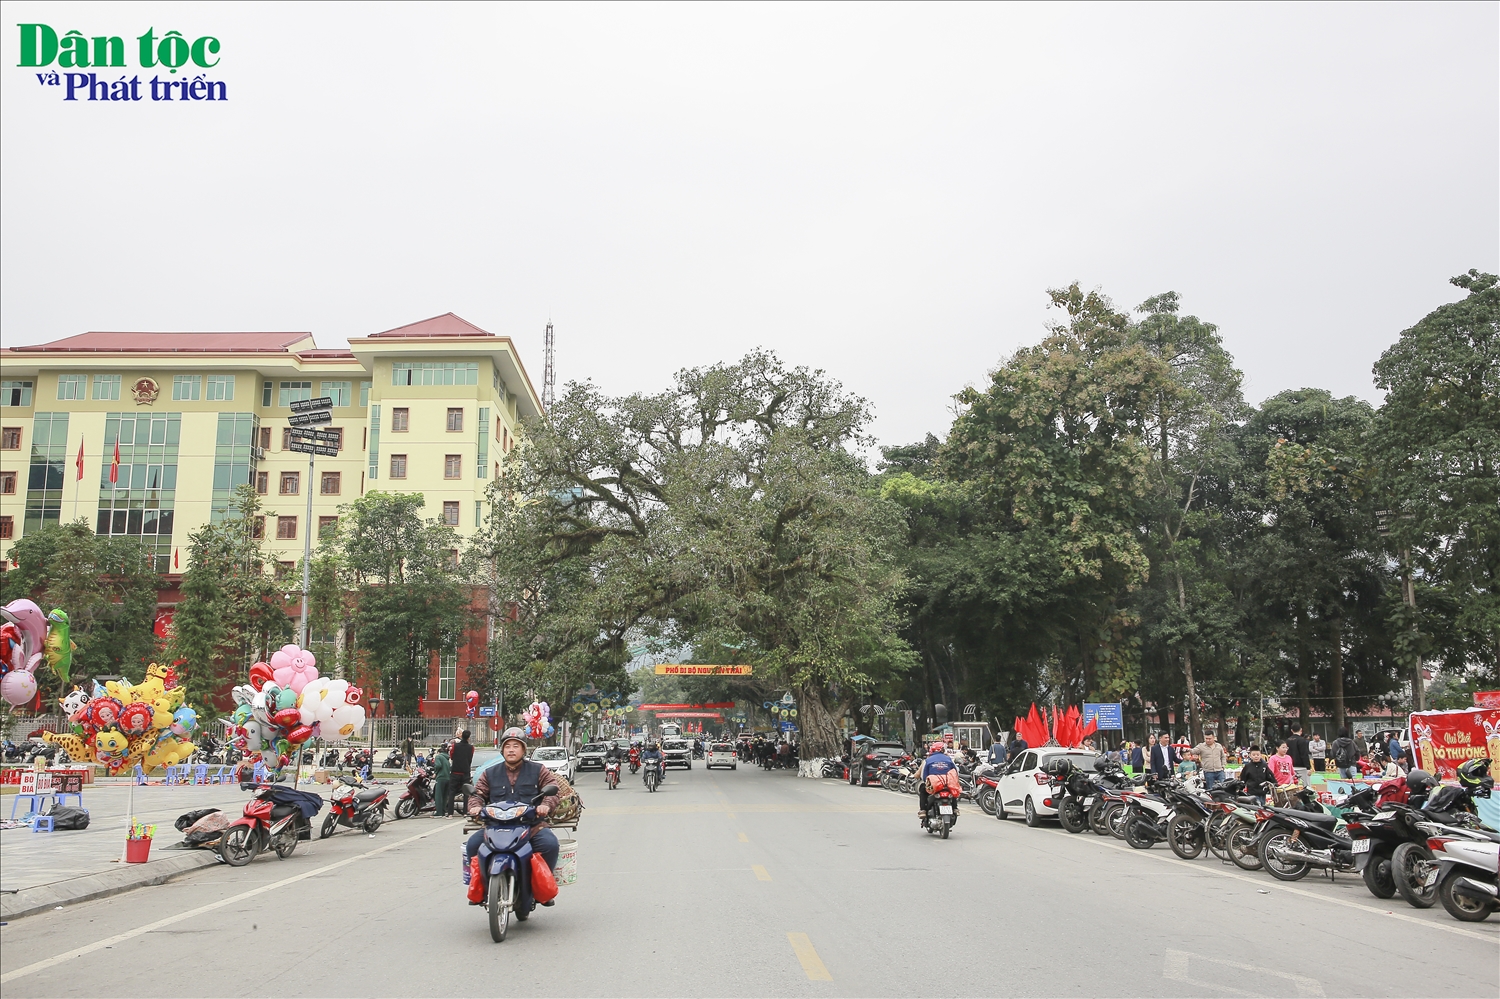 Nếu xuất phát từ thủ đô Hà Nội, du khách phải đi khoảng hơn 300km, mất từ 7 đến 10 tiếng đồng hồ di chuyển. Với những bạn không nắm rõ đường đi thì xe khách là sự lựa chọn tốt nhất, giúp chuyến đi an toàn và nhanh hơn.